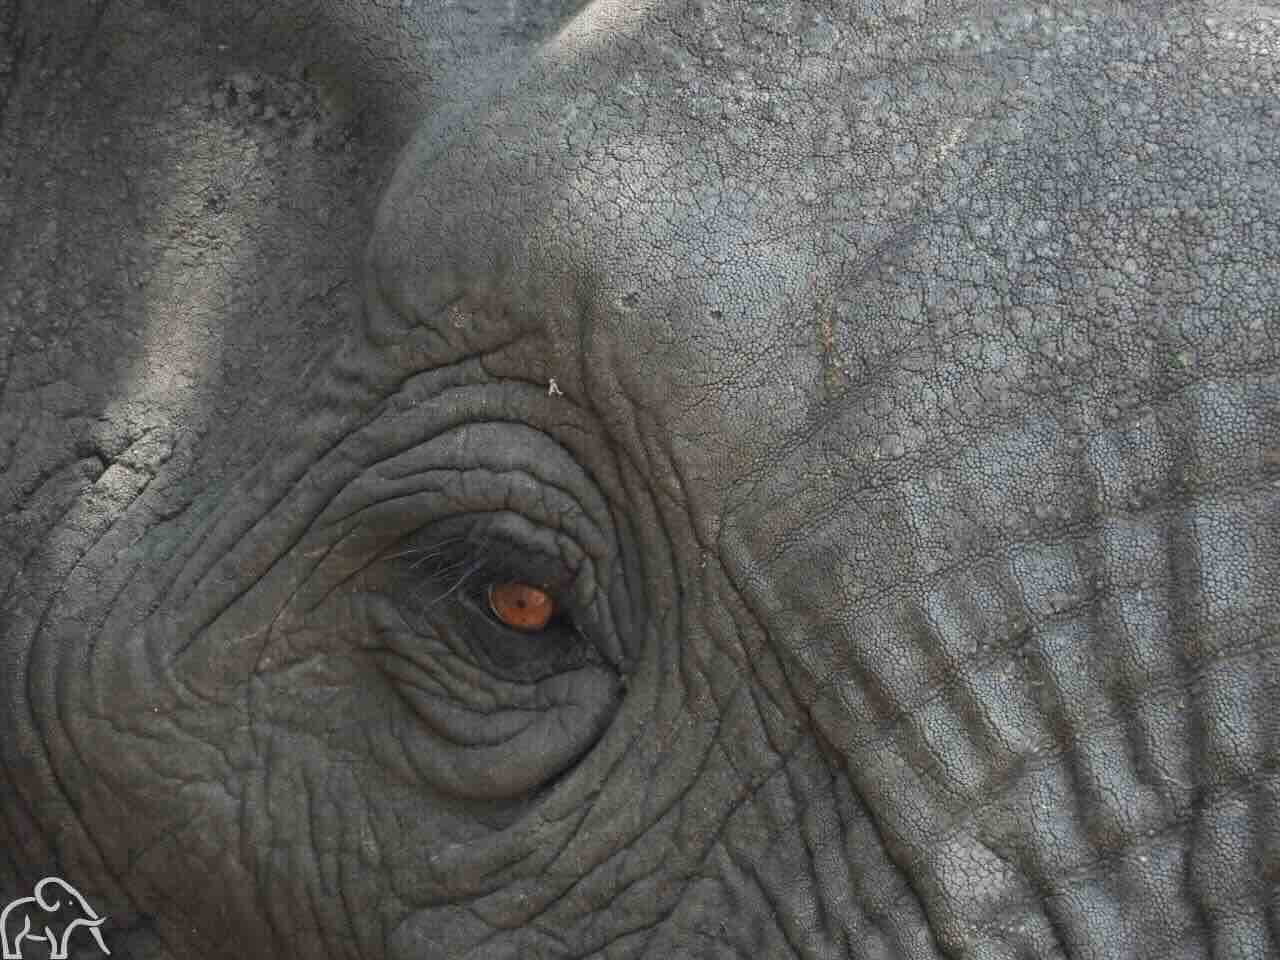 Safari Tanzania met een closeup van het oog van een olifant en een klein stukje van zijn hoofd. Het oog is bruin en heeft een klein zwarte pupil